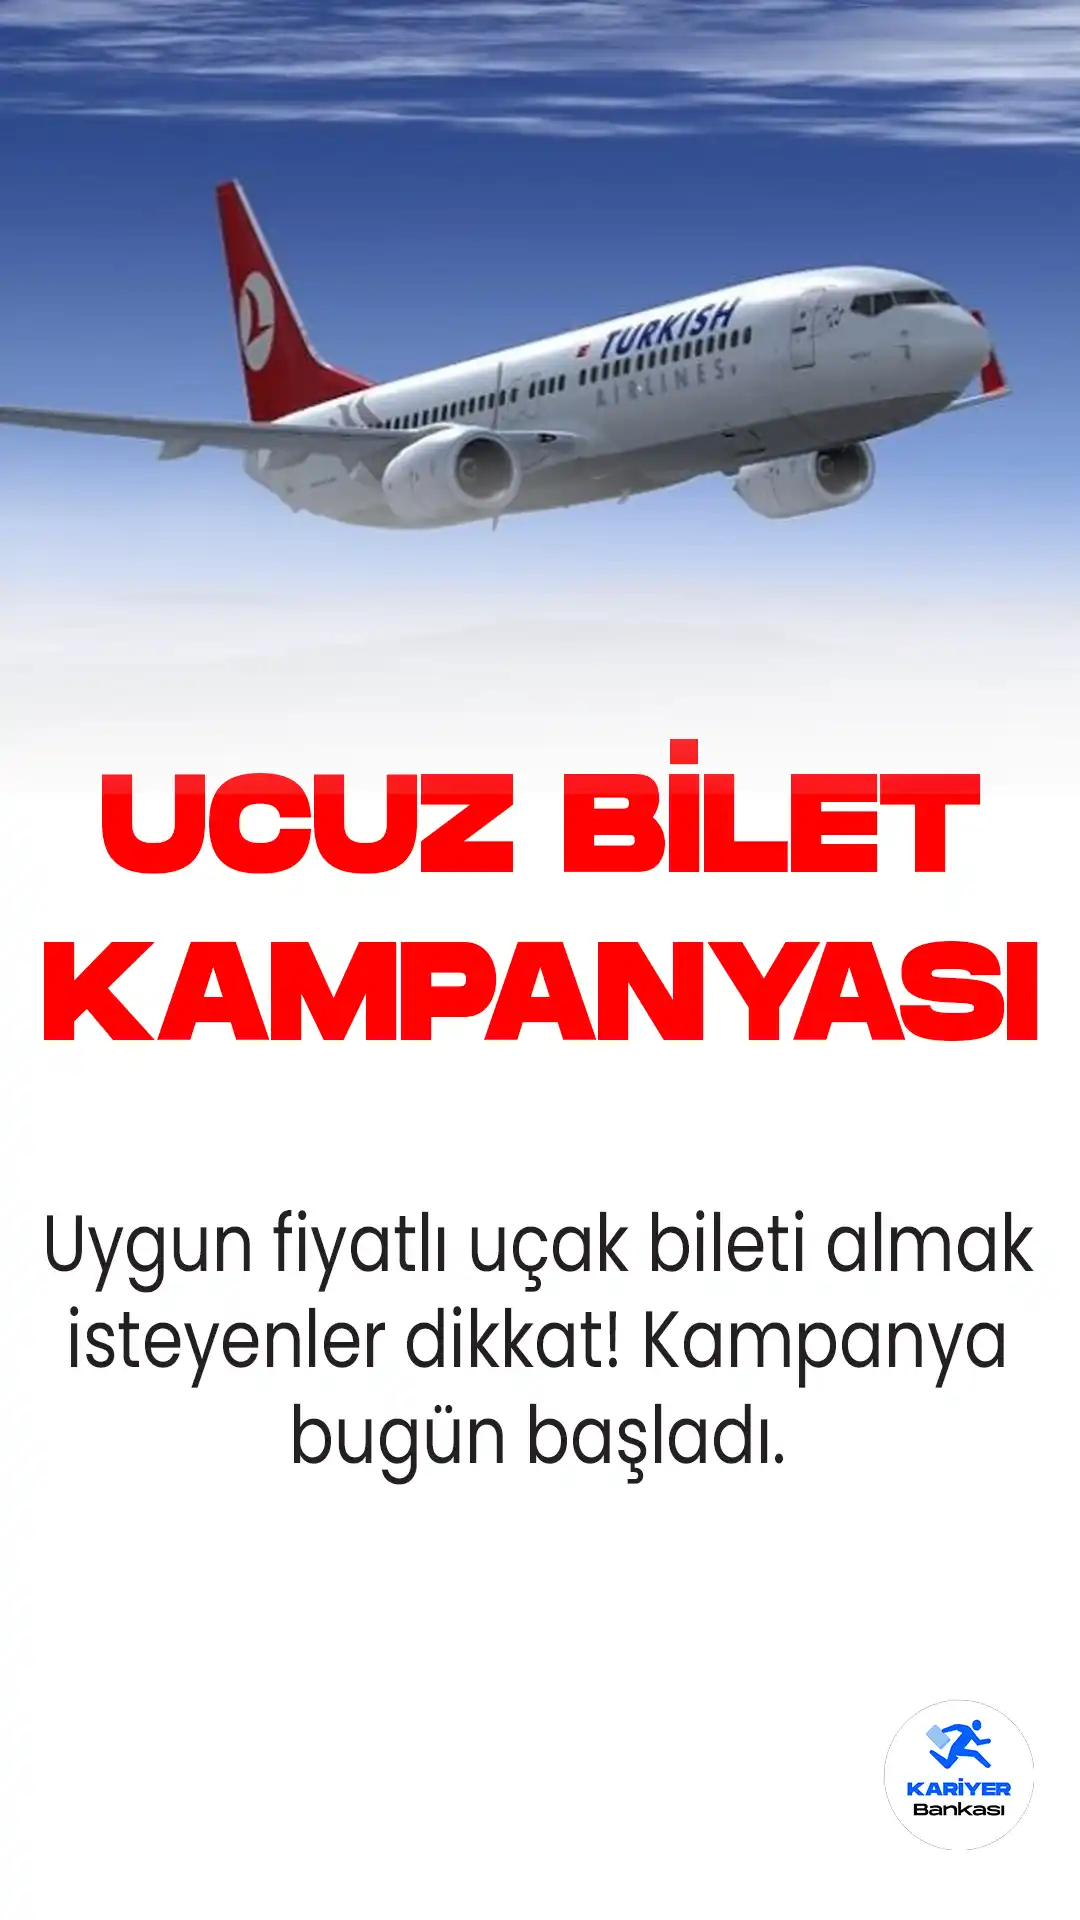 Türk Hava Yolları ve AnadoluJet, yurt içi uçuşlar için özel bir kampanya düzenliyor. 449 TL fiyatlı bilet kampanyasının detayları...